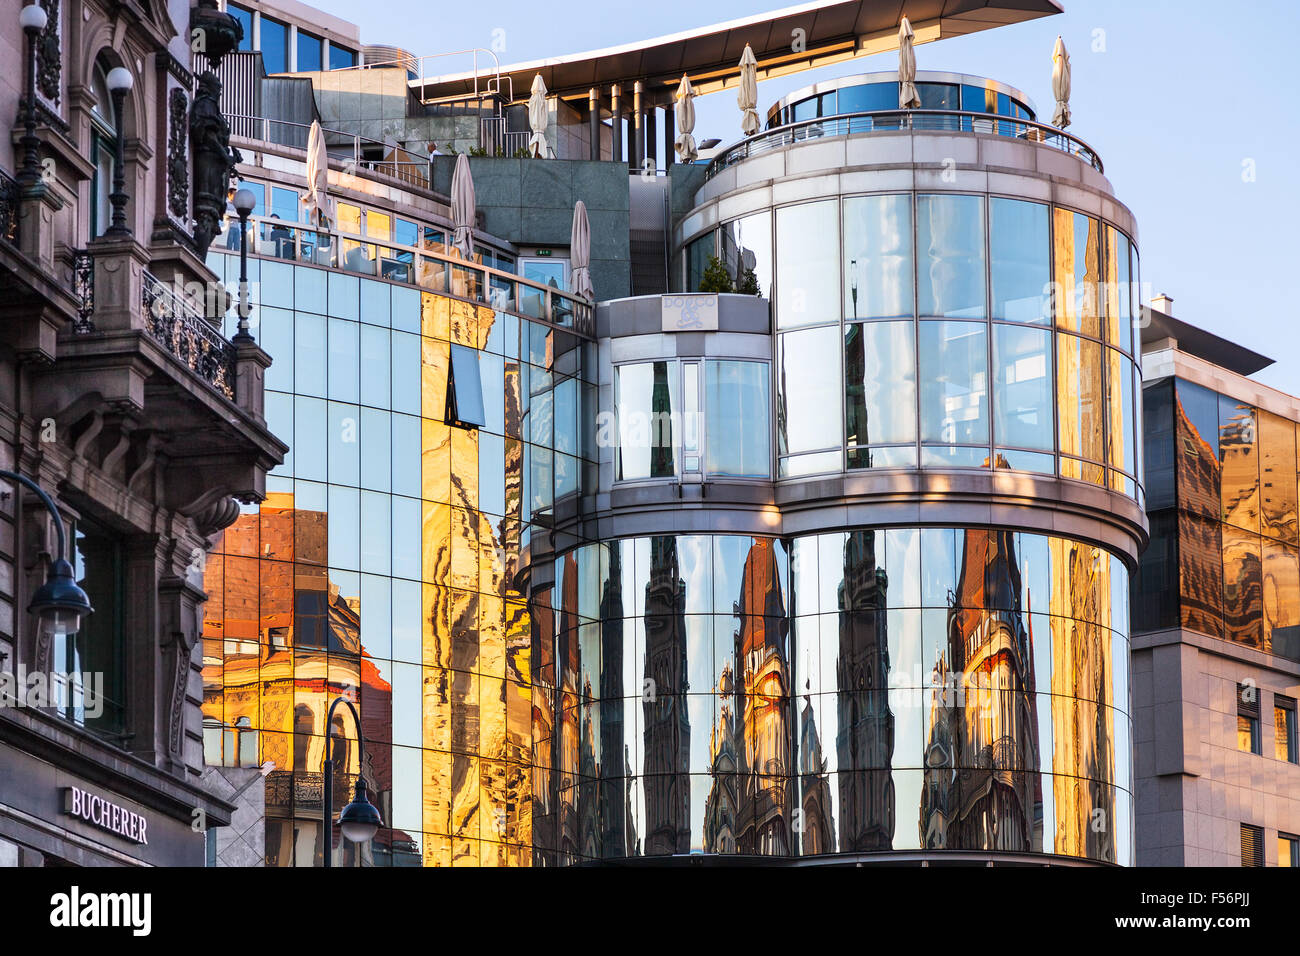 Vienne, Autriche - 28 septembre 2015 : reflet de la cathédrale St Stephen dans mur de Haas House sur Stephansplatz à Vienne. Haas- Banque D'Images